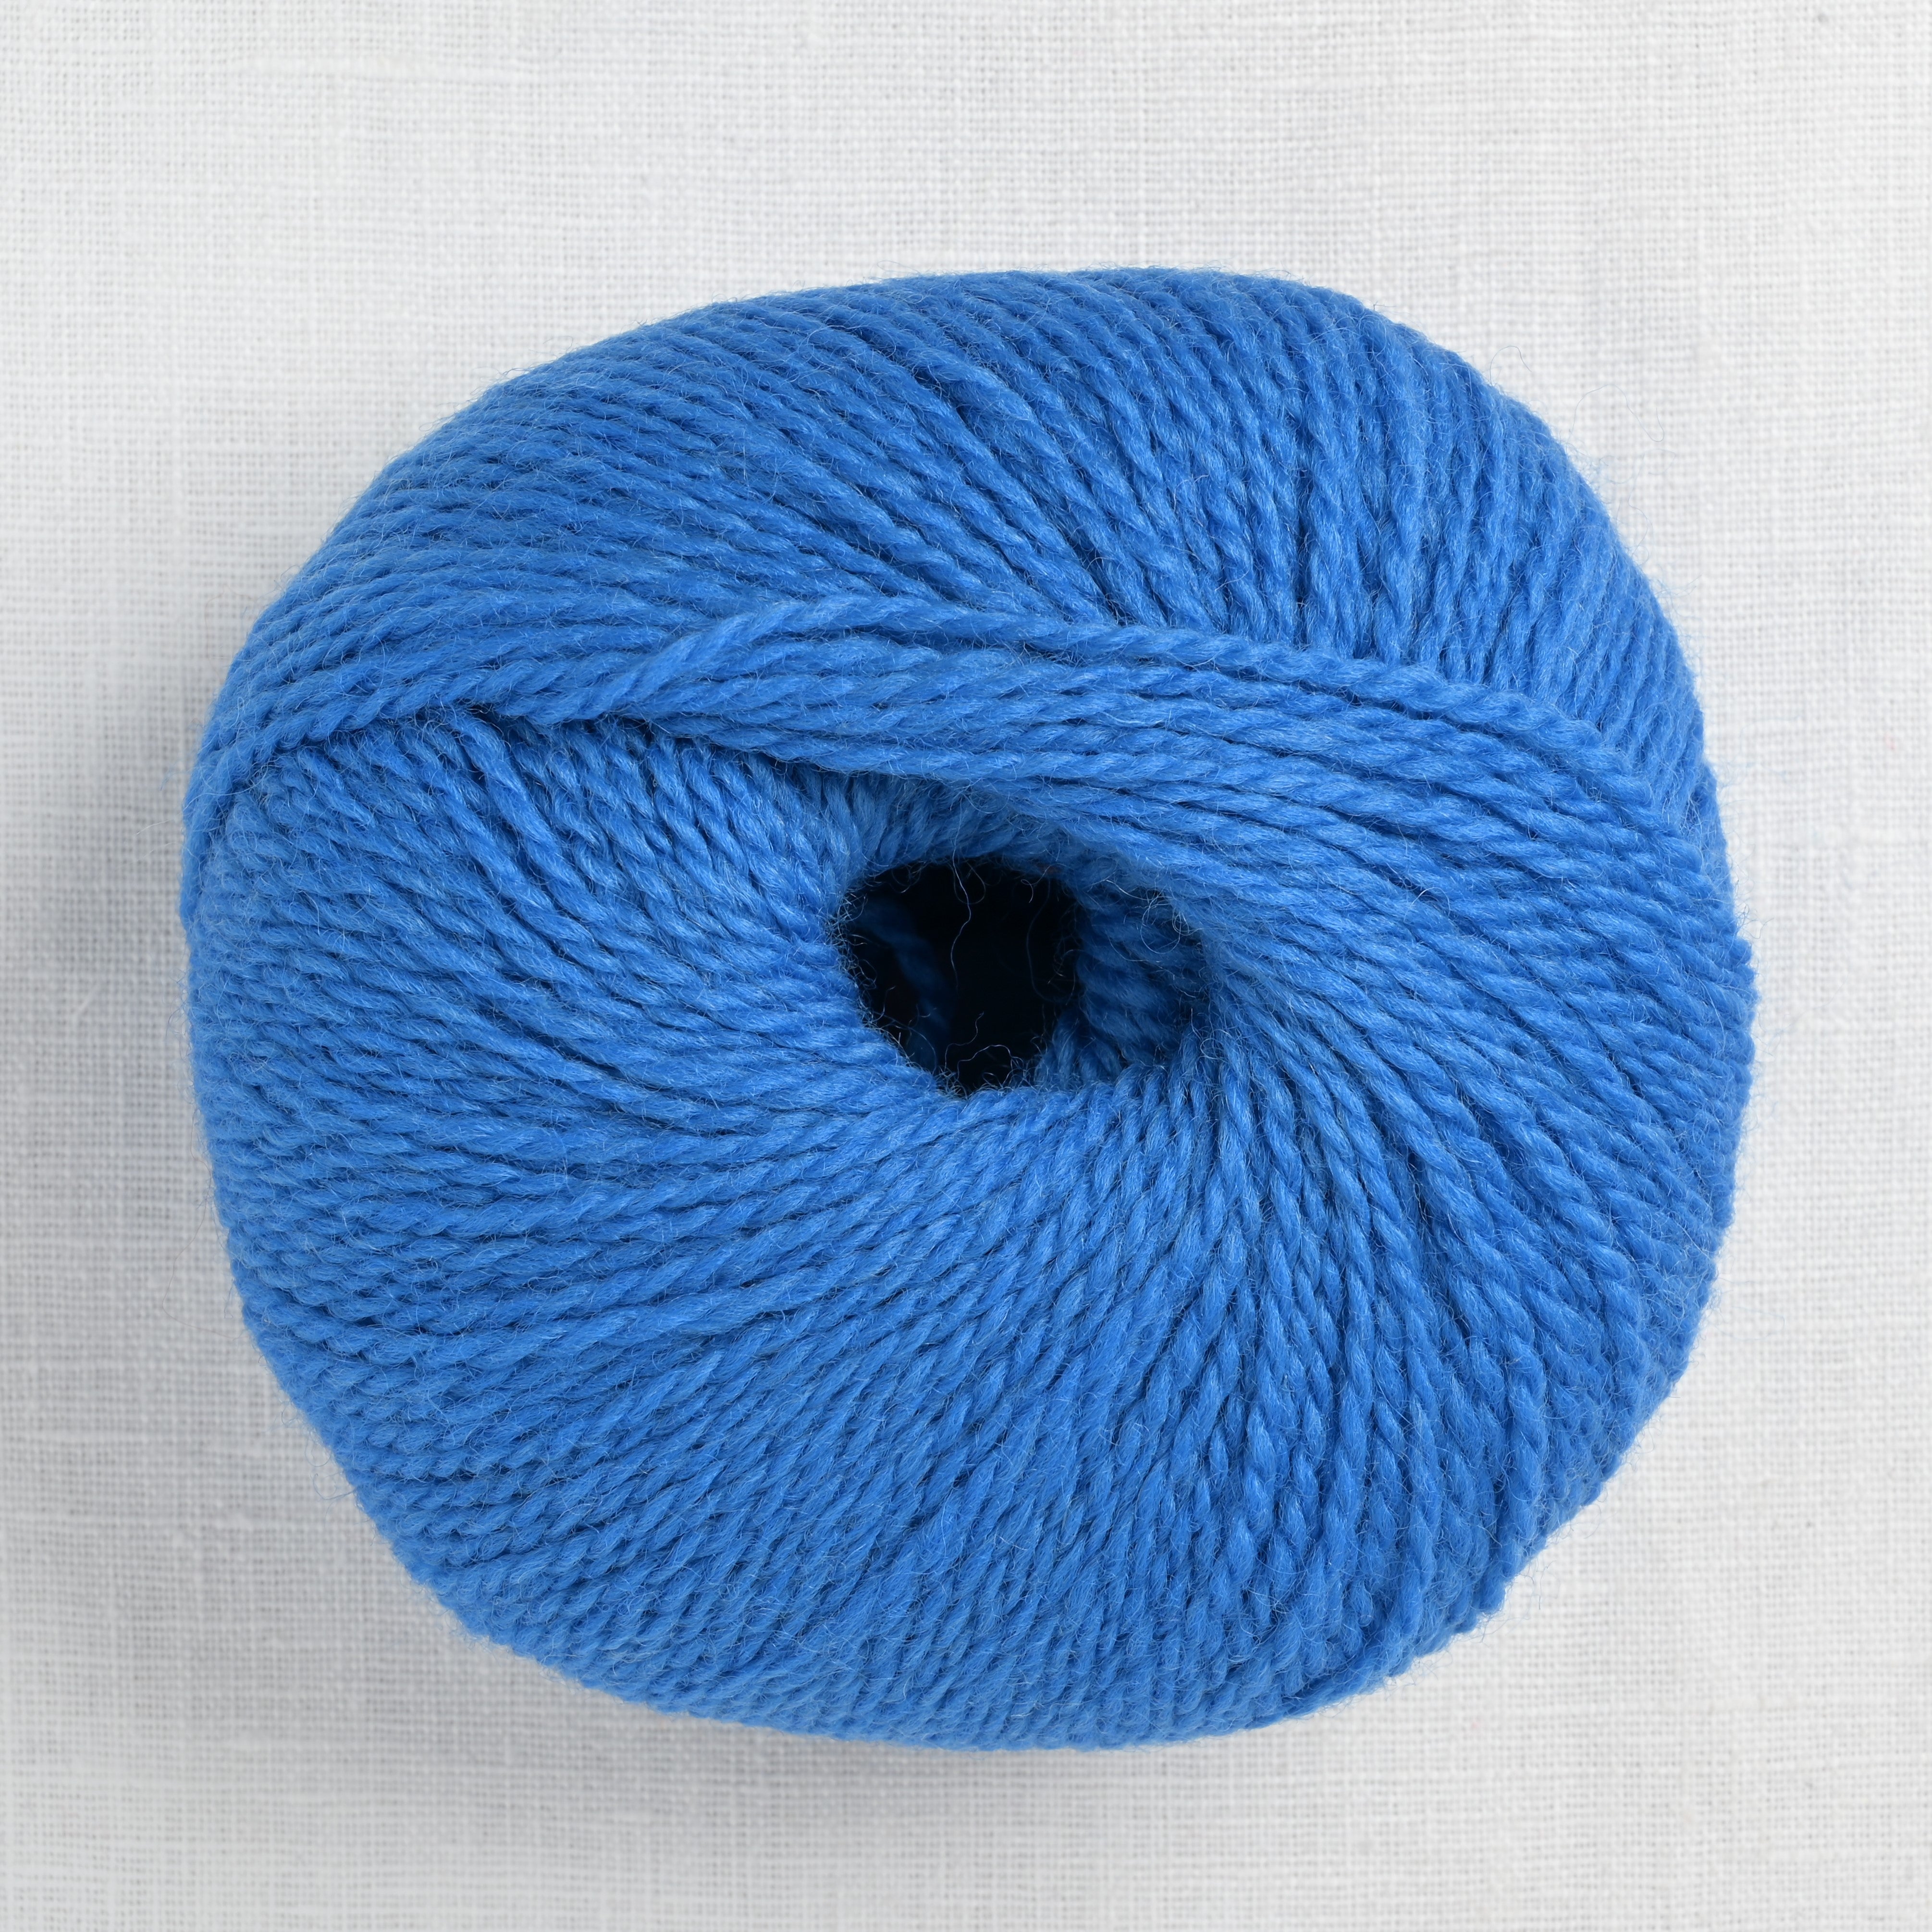 Yarn Detective: Norwegian Wool – Modern Daily Knitting